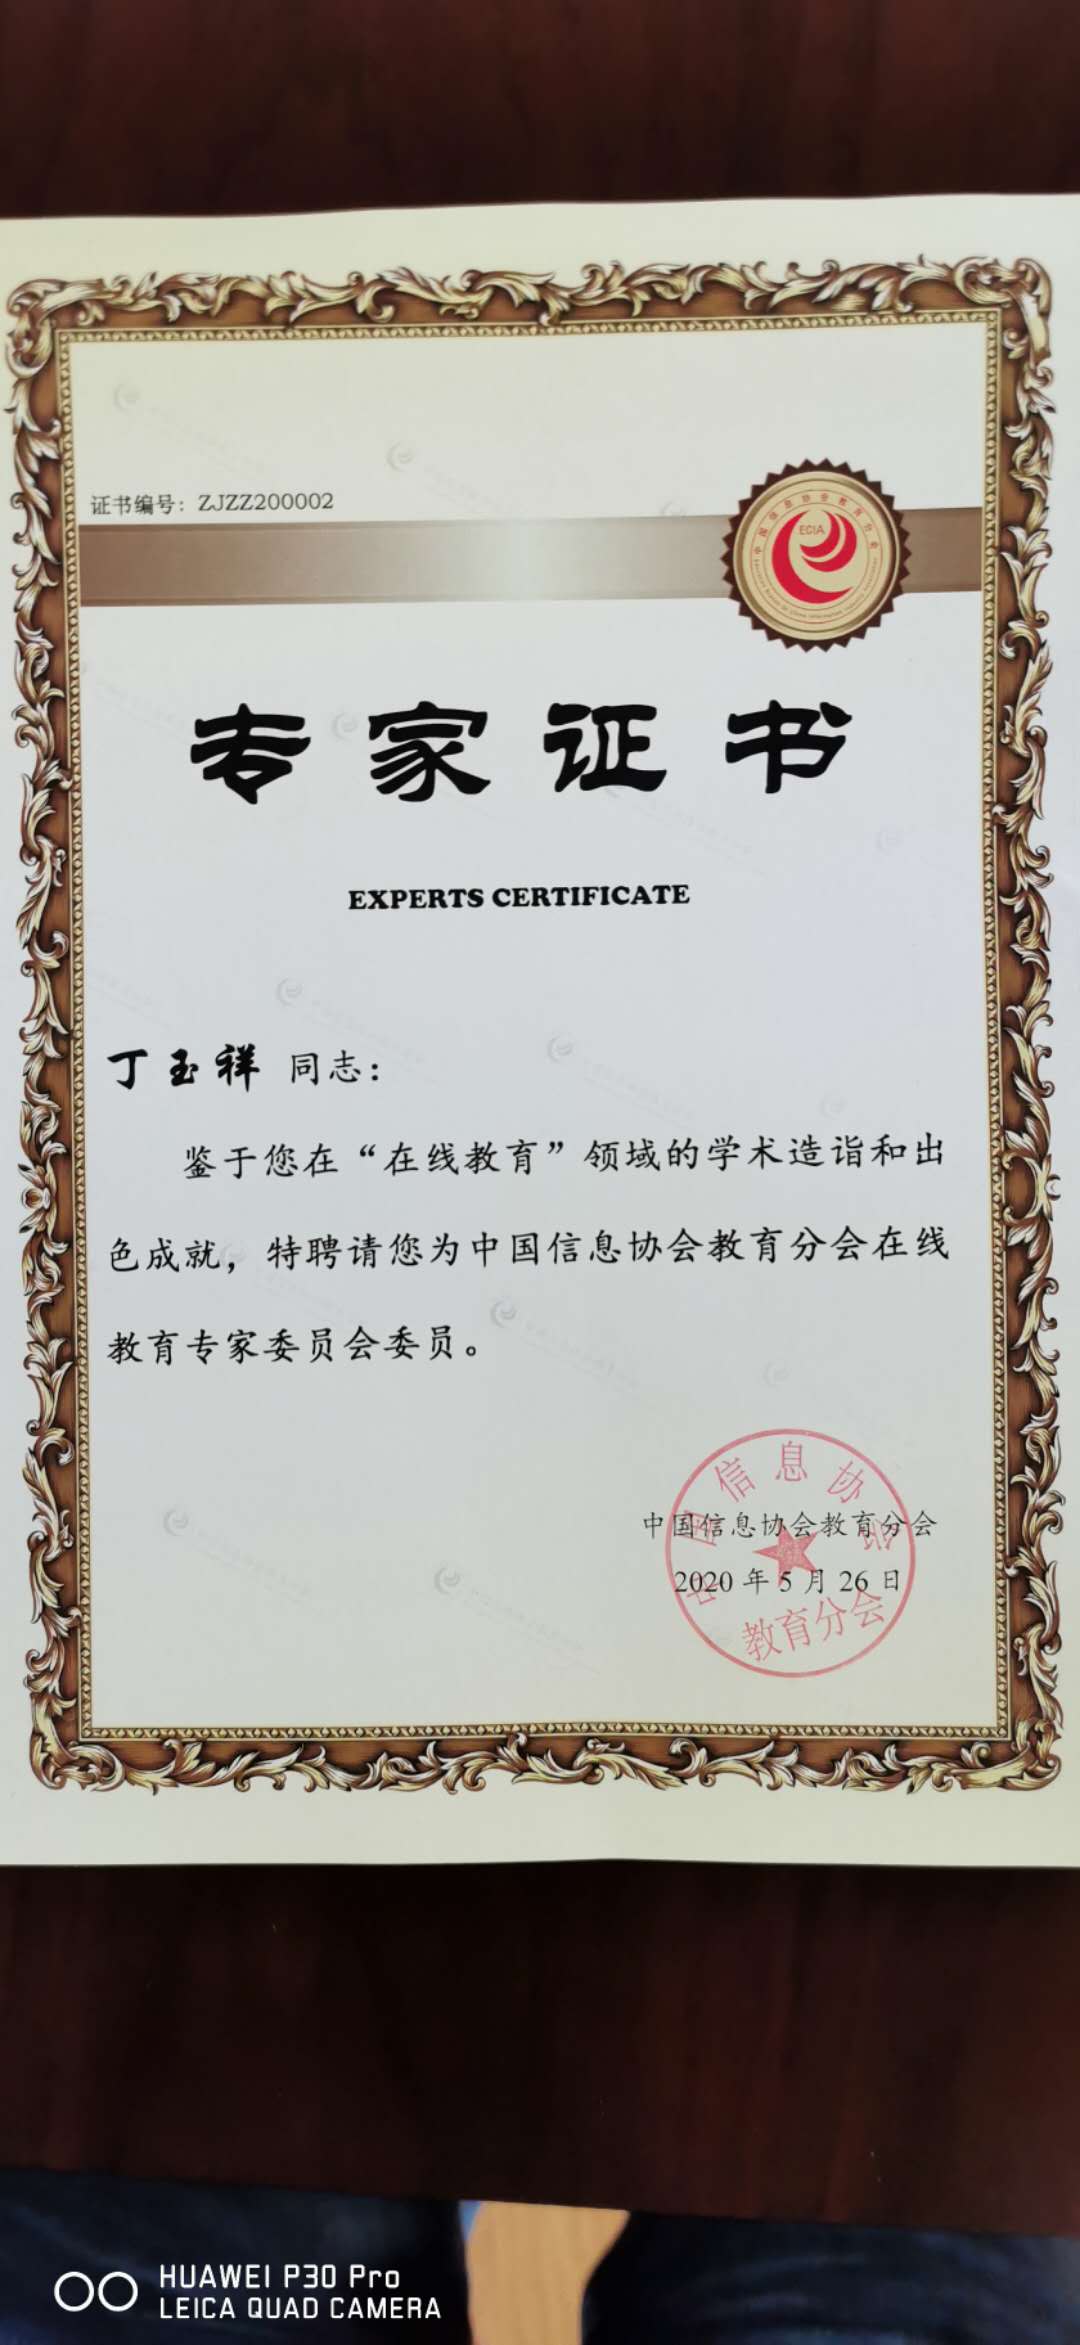 中国信息协会教育分会在线教育专家委员会证书